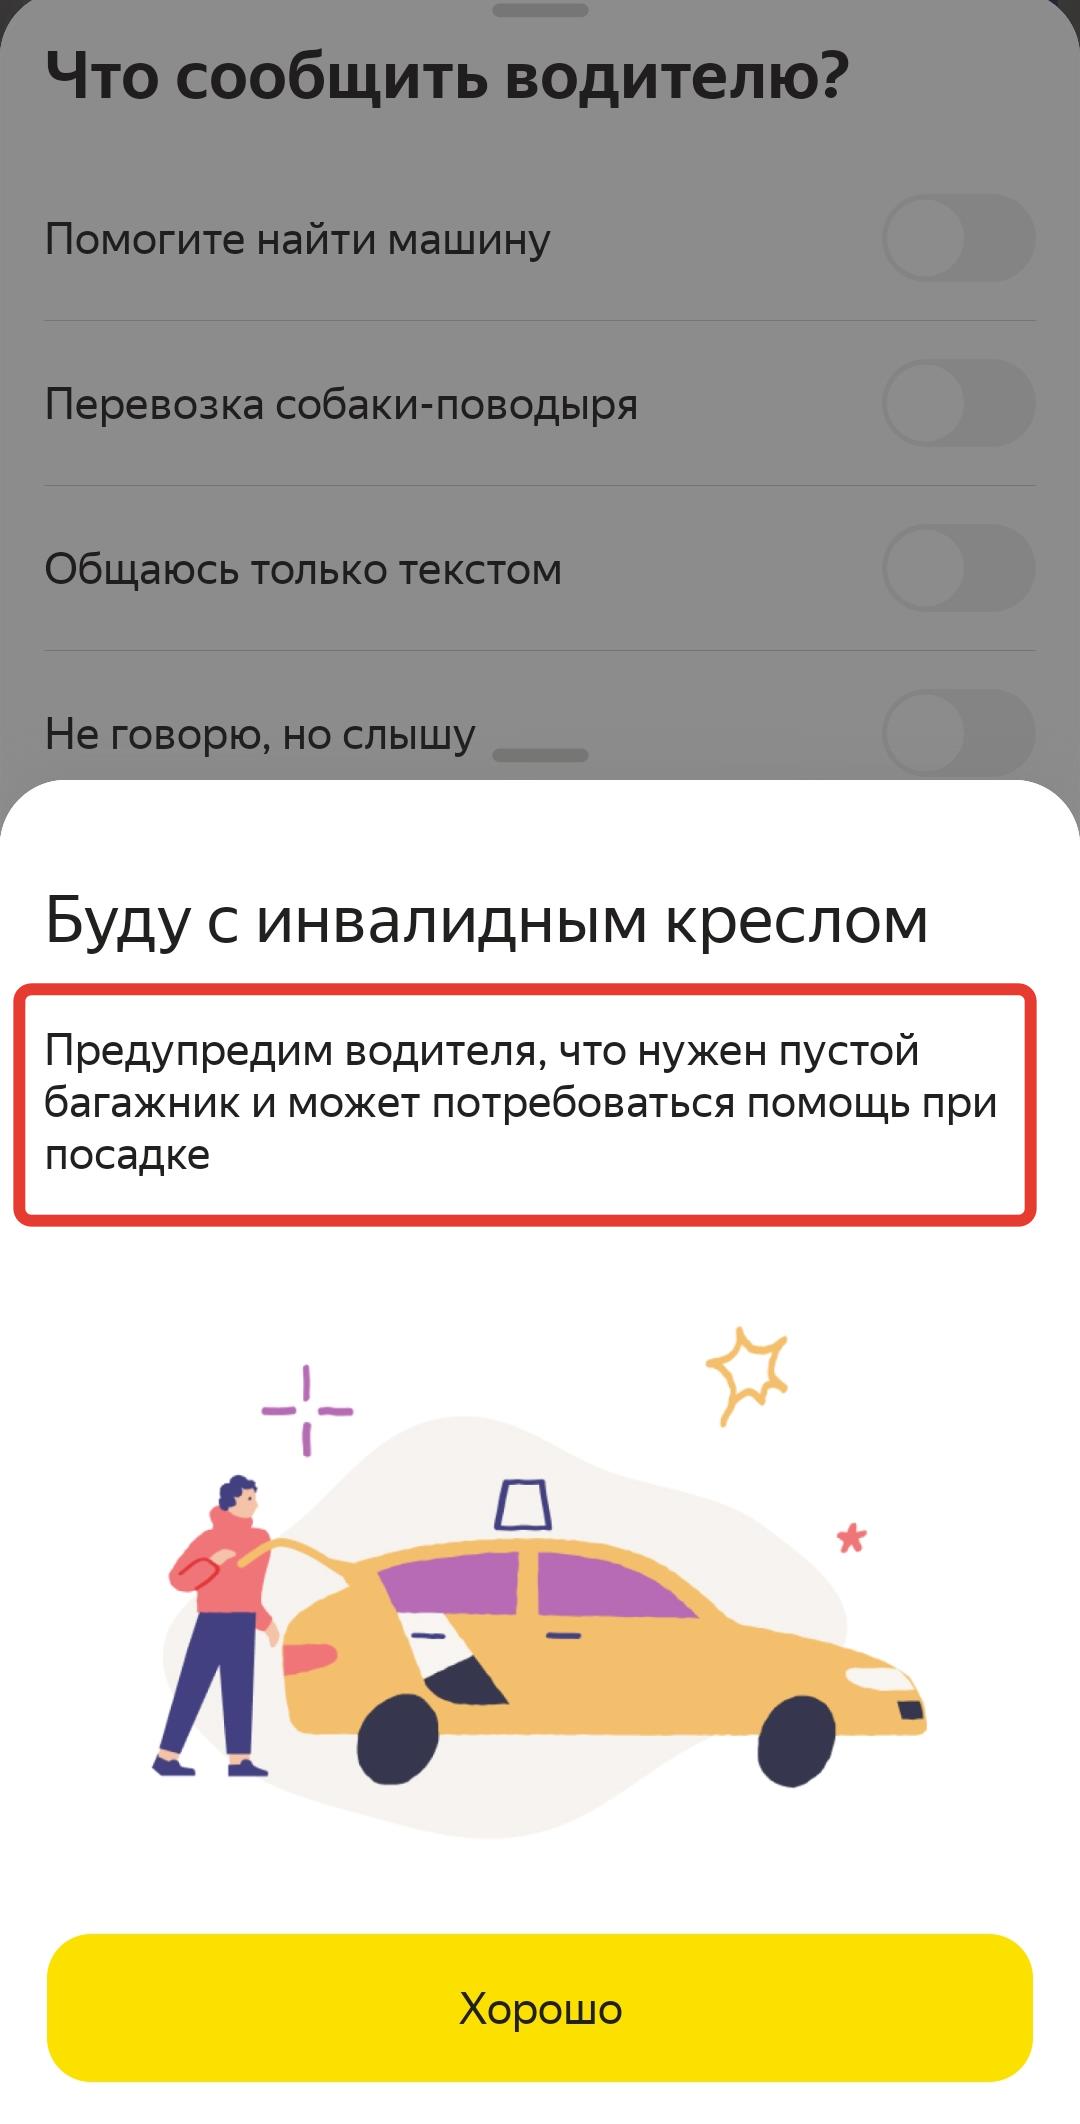 Скриншот приложения "Яндекс Такси" с уведомлением "Буду с инвалидным креслом"